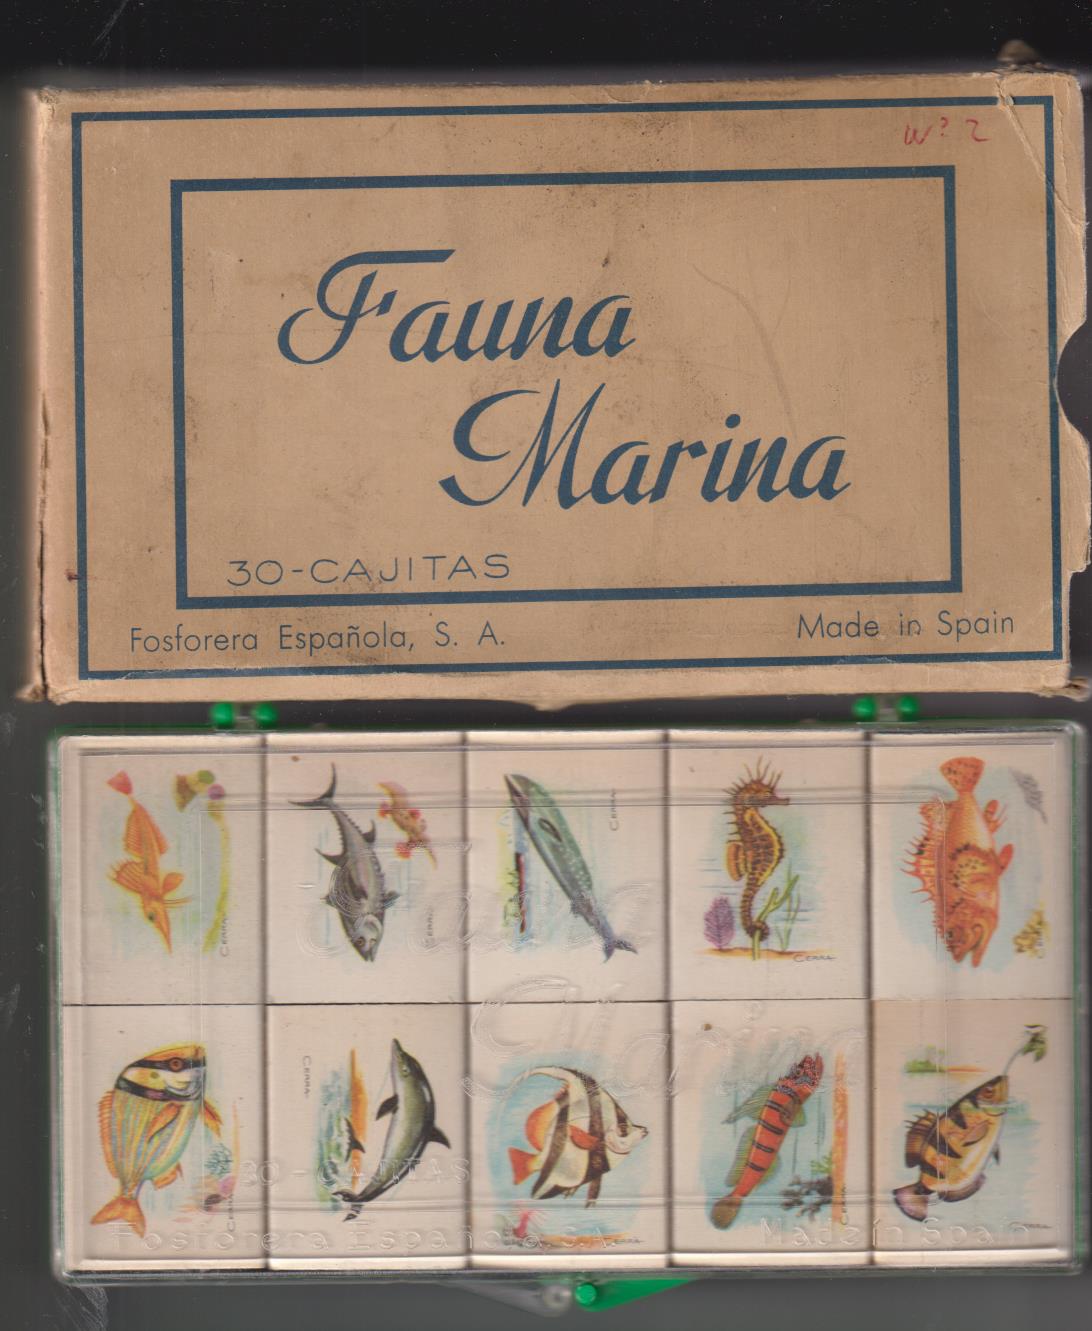 Fauna Marina Completa. 30 Cajas de Cerillas sin usar en su Estuche de plástico y caja de cartón